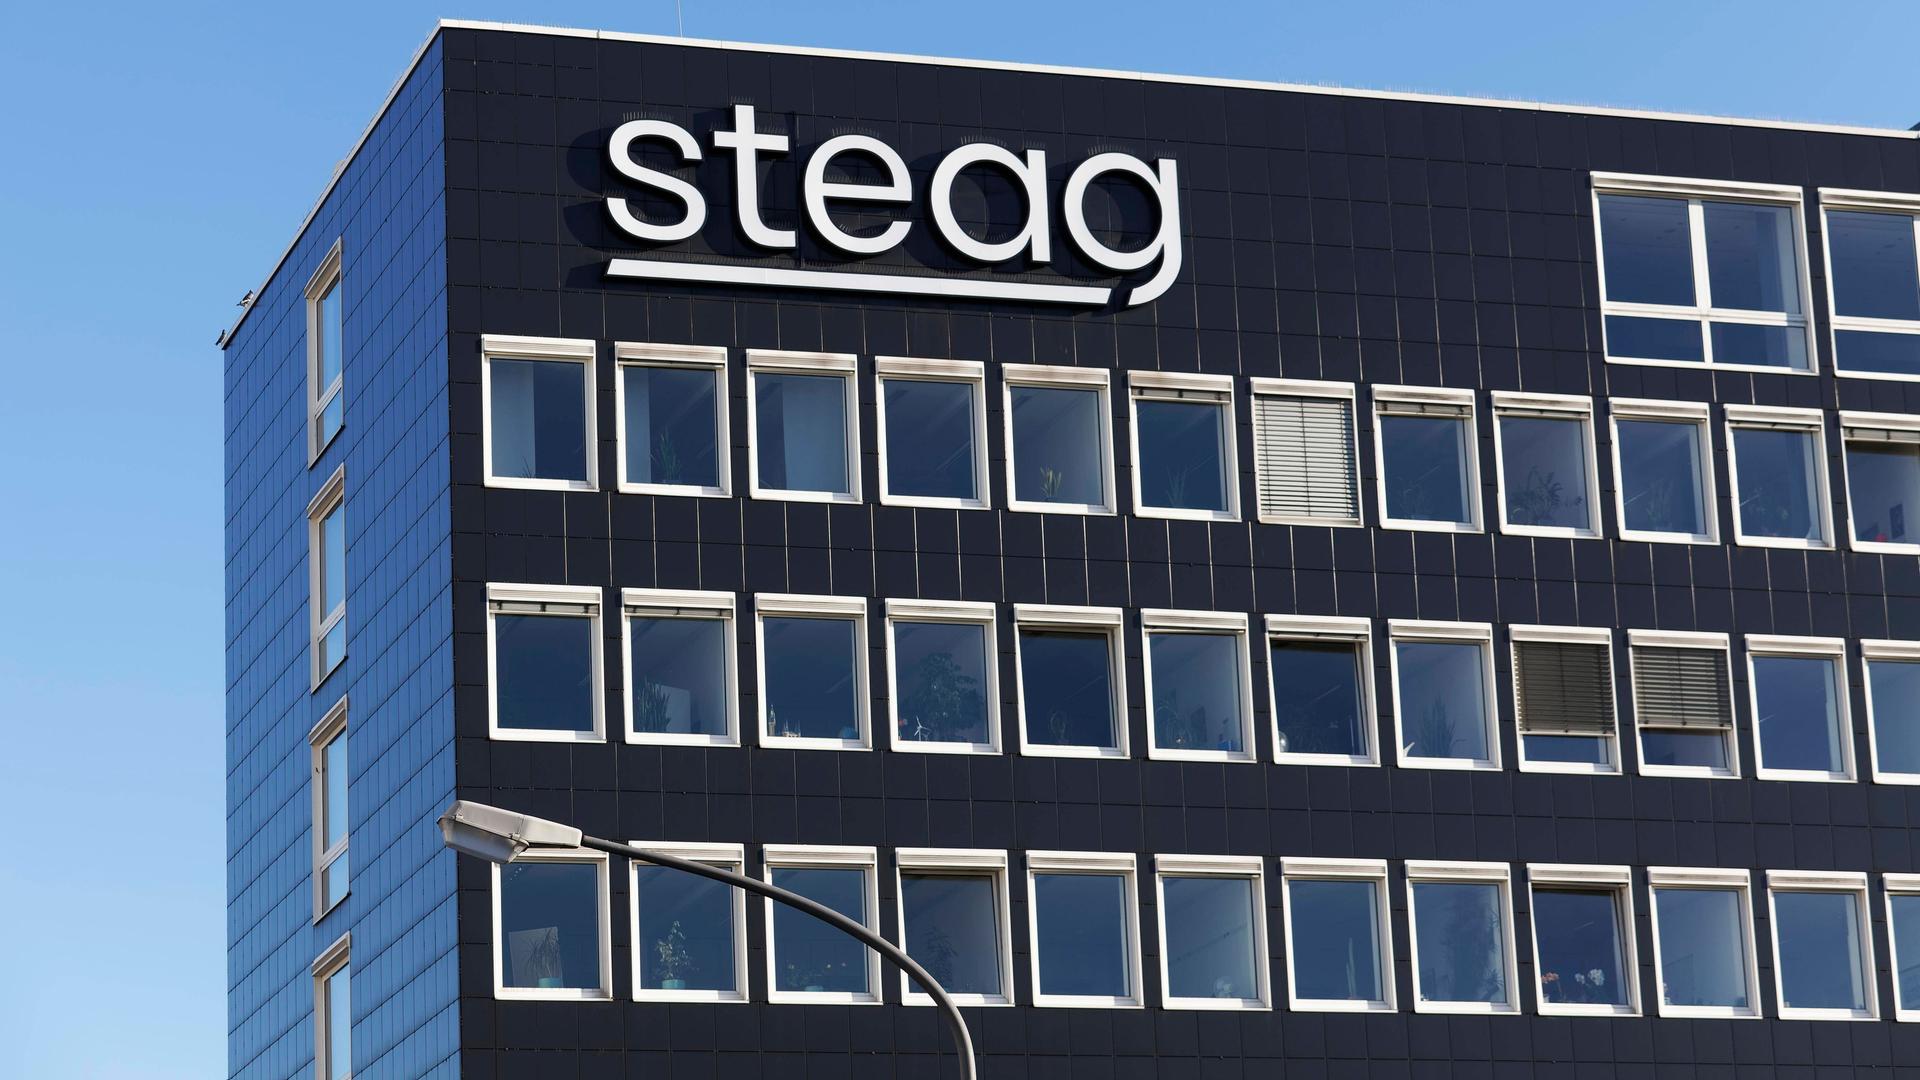 Zentrale der Steag GmbH in Essen